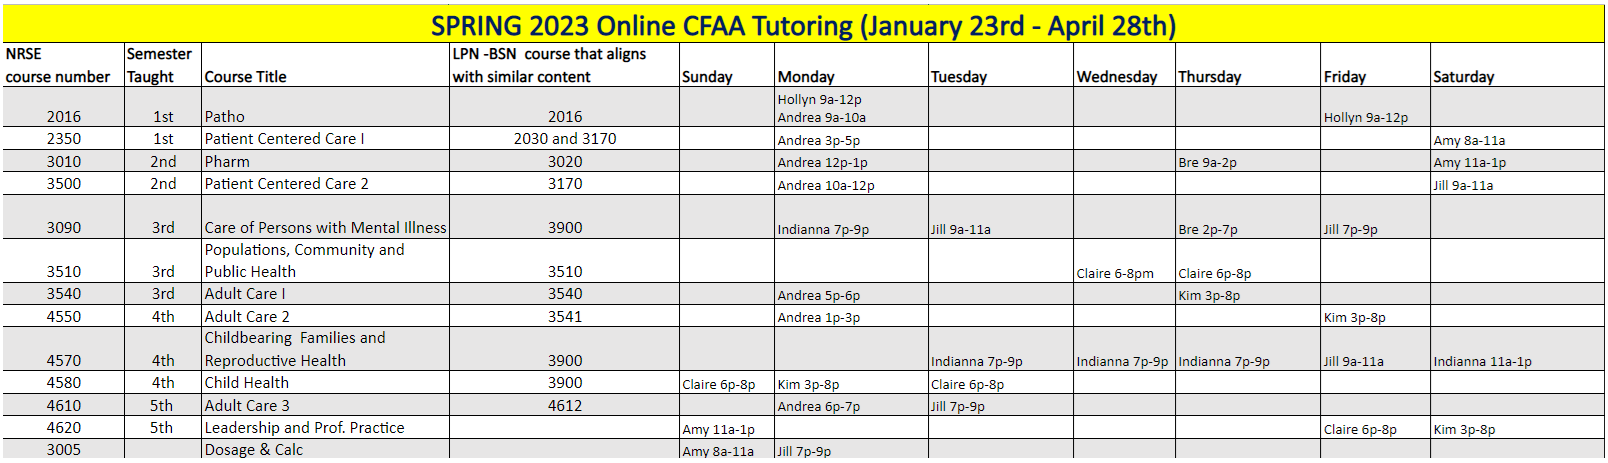 Spring 2023 Inline CFAA Tutoring Schedule